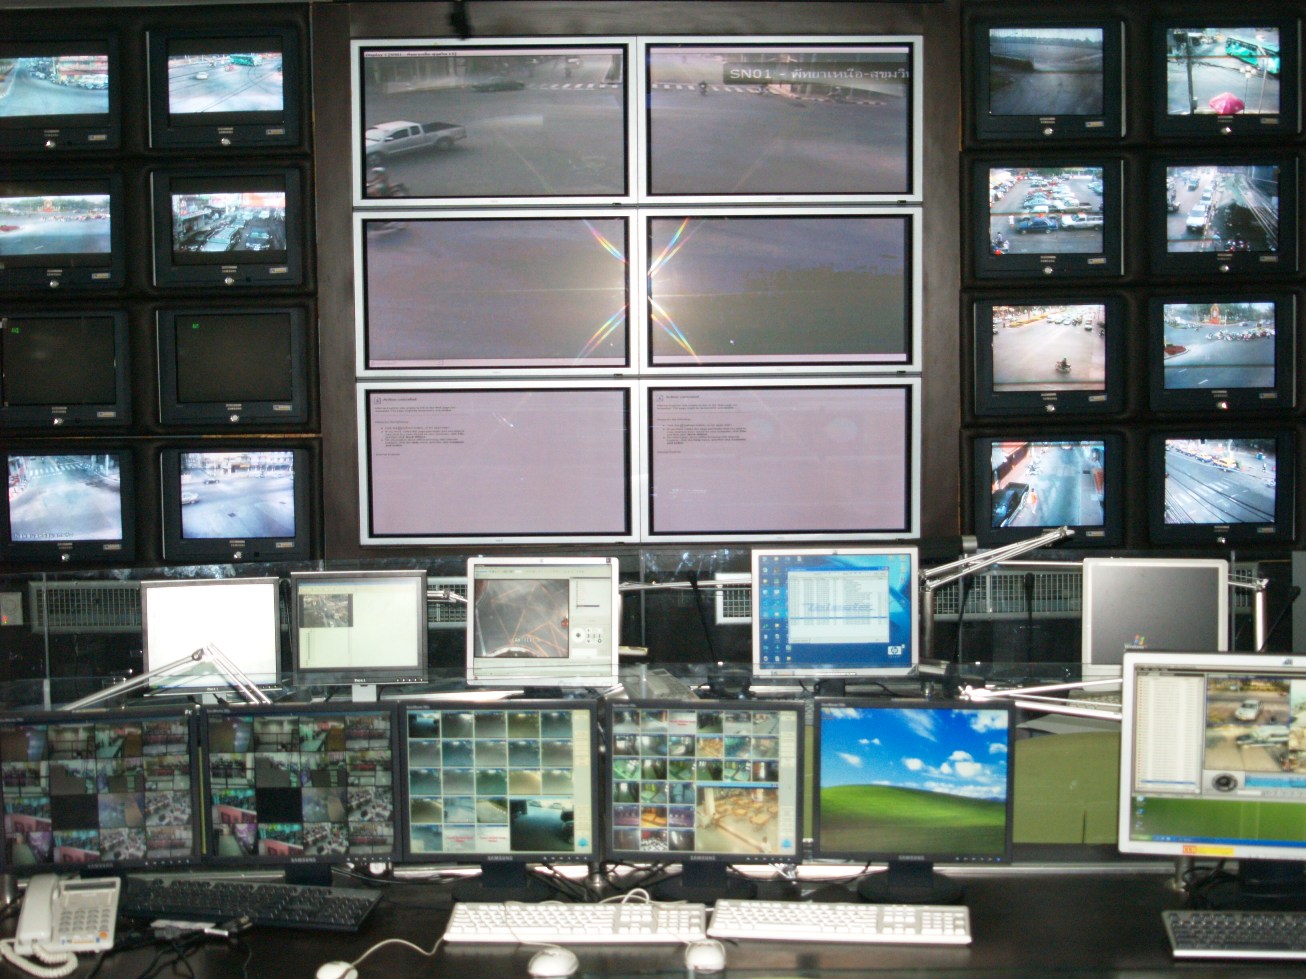 กล้องวงจรปิด CCTV บทความ ปชช.ขอข้อมูลจาก กล้องโทรทัศน์วงจรปิด CCTV